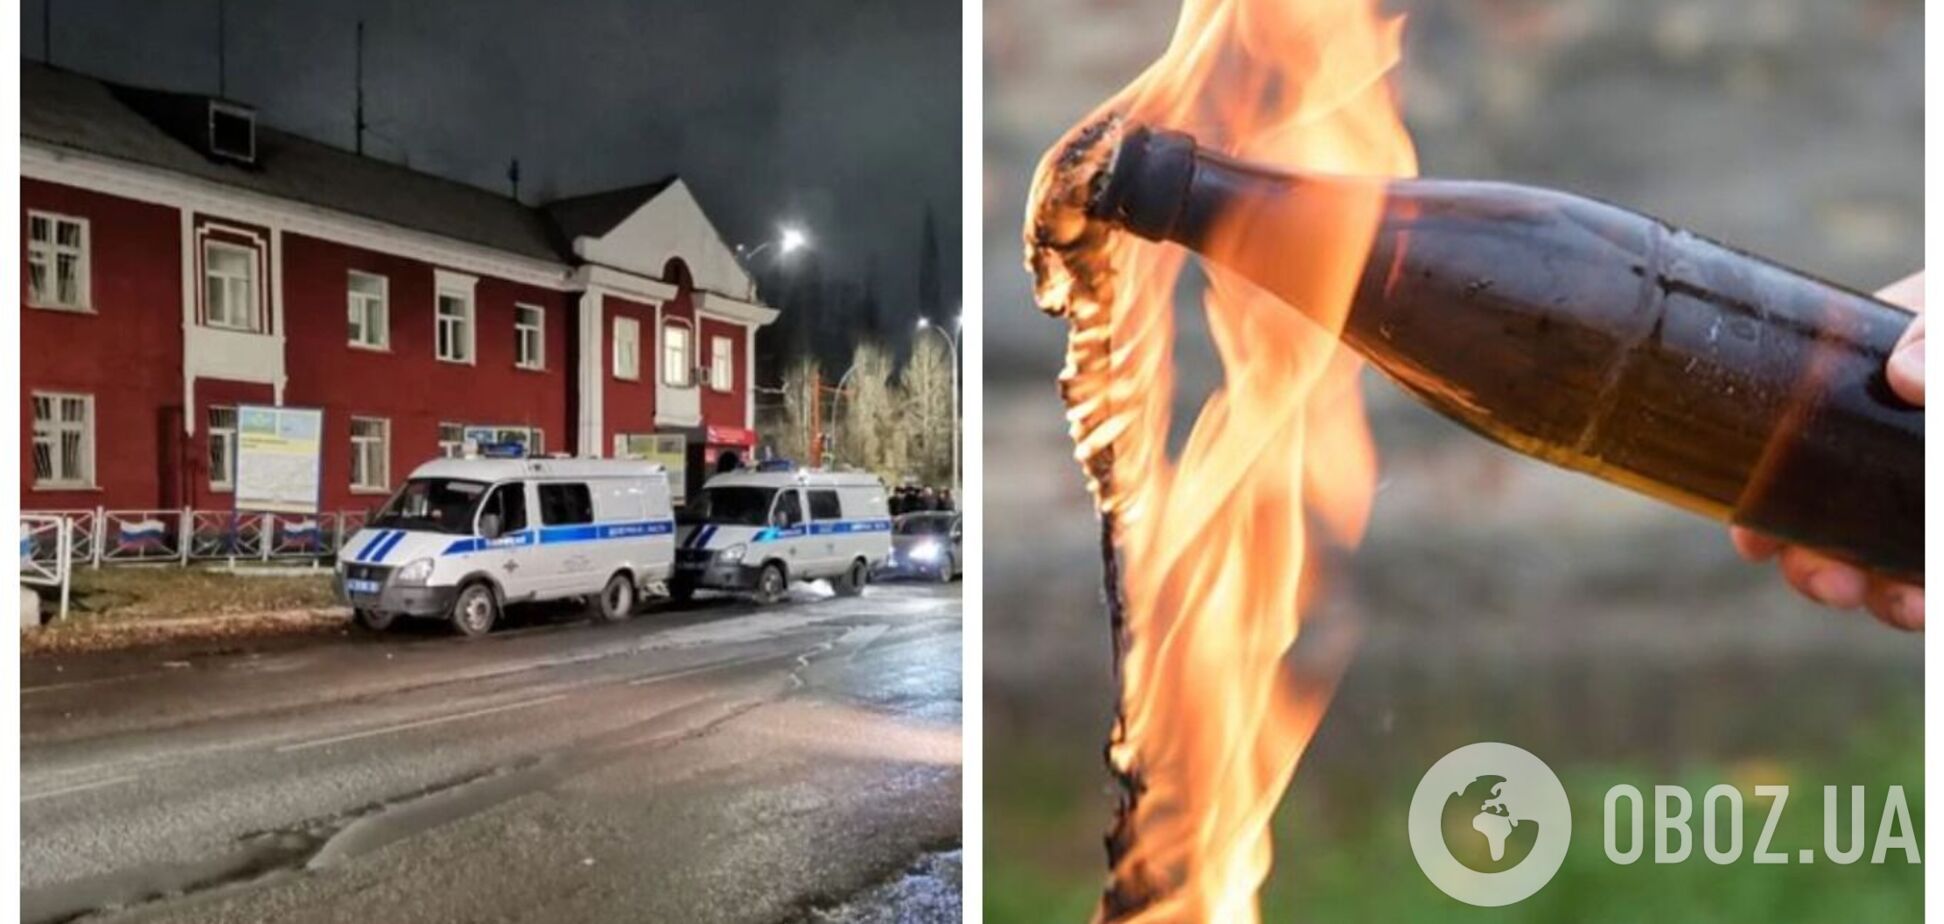 В России женщина бросила в военкомат 'коктейль Молотова' и устроила пожар. Фото